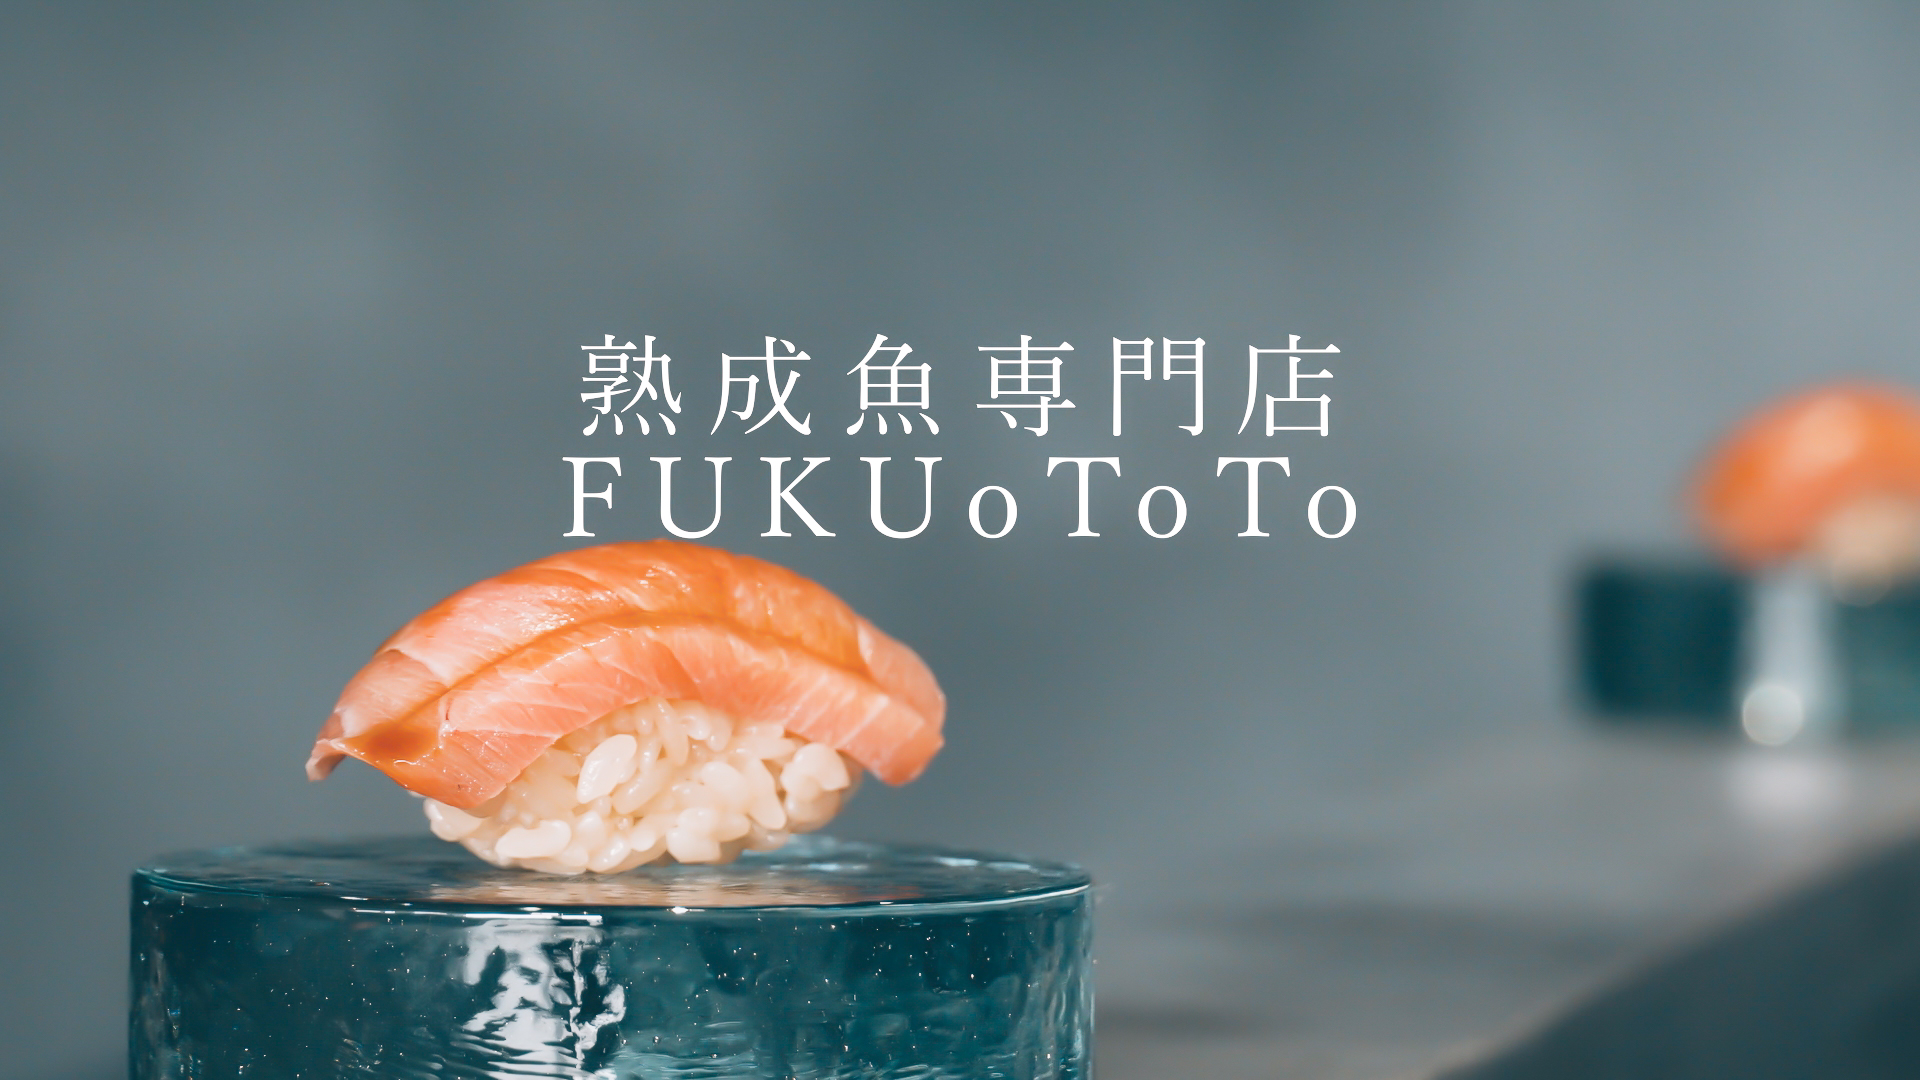 熟成魚専門店 FUKUoToTo | 福良の港町から、熟成魚を世界へ